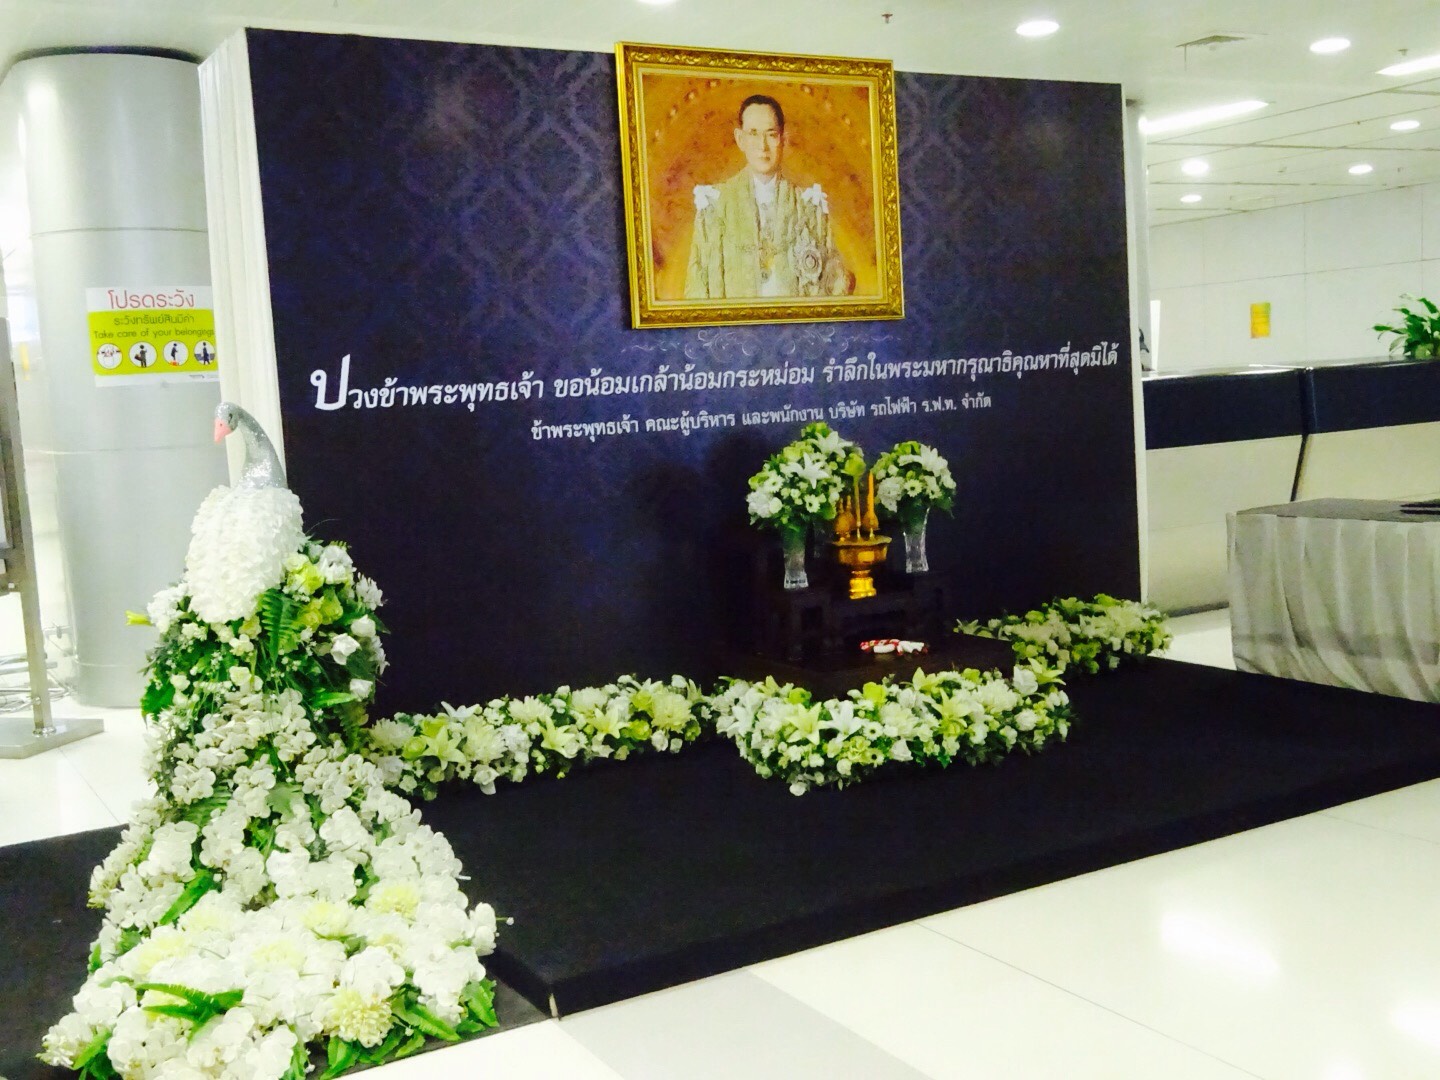 タイ国王の慰霊スポット